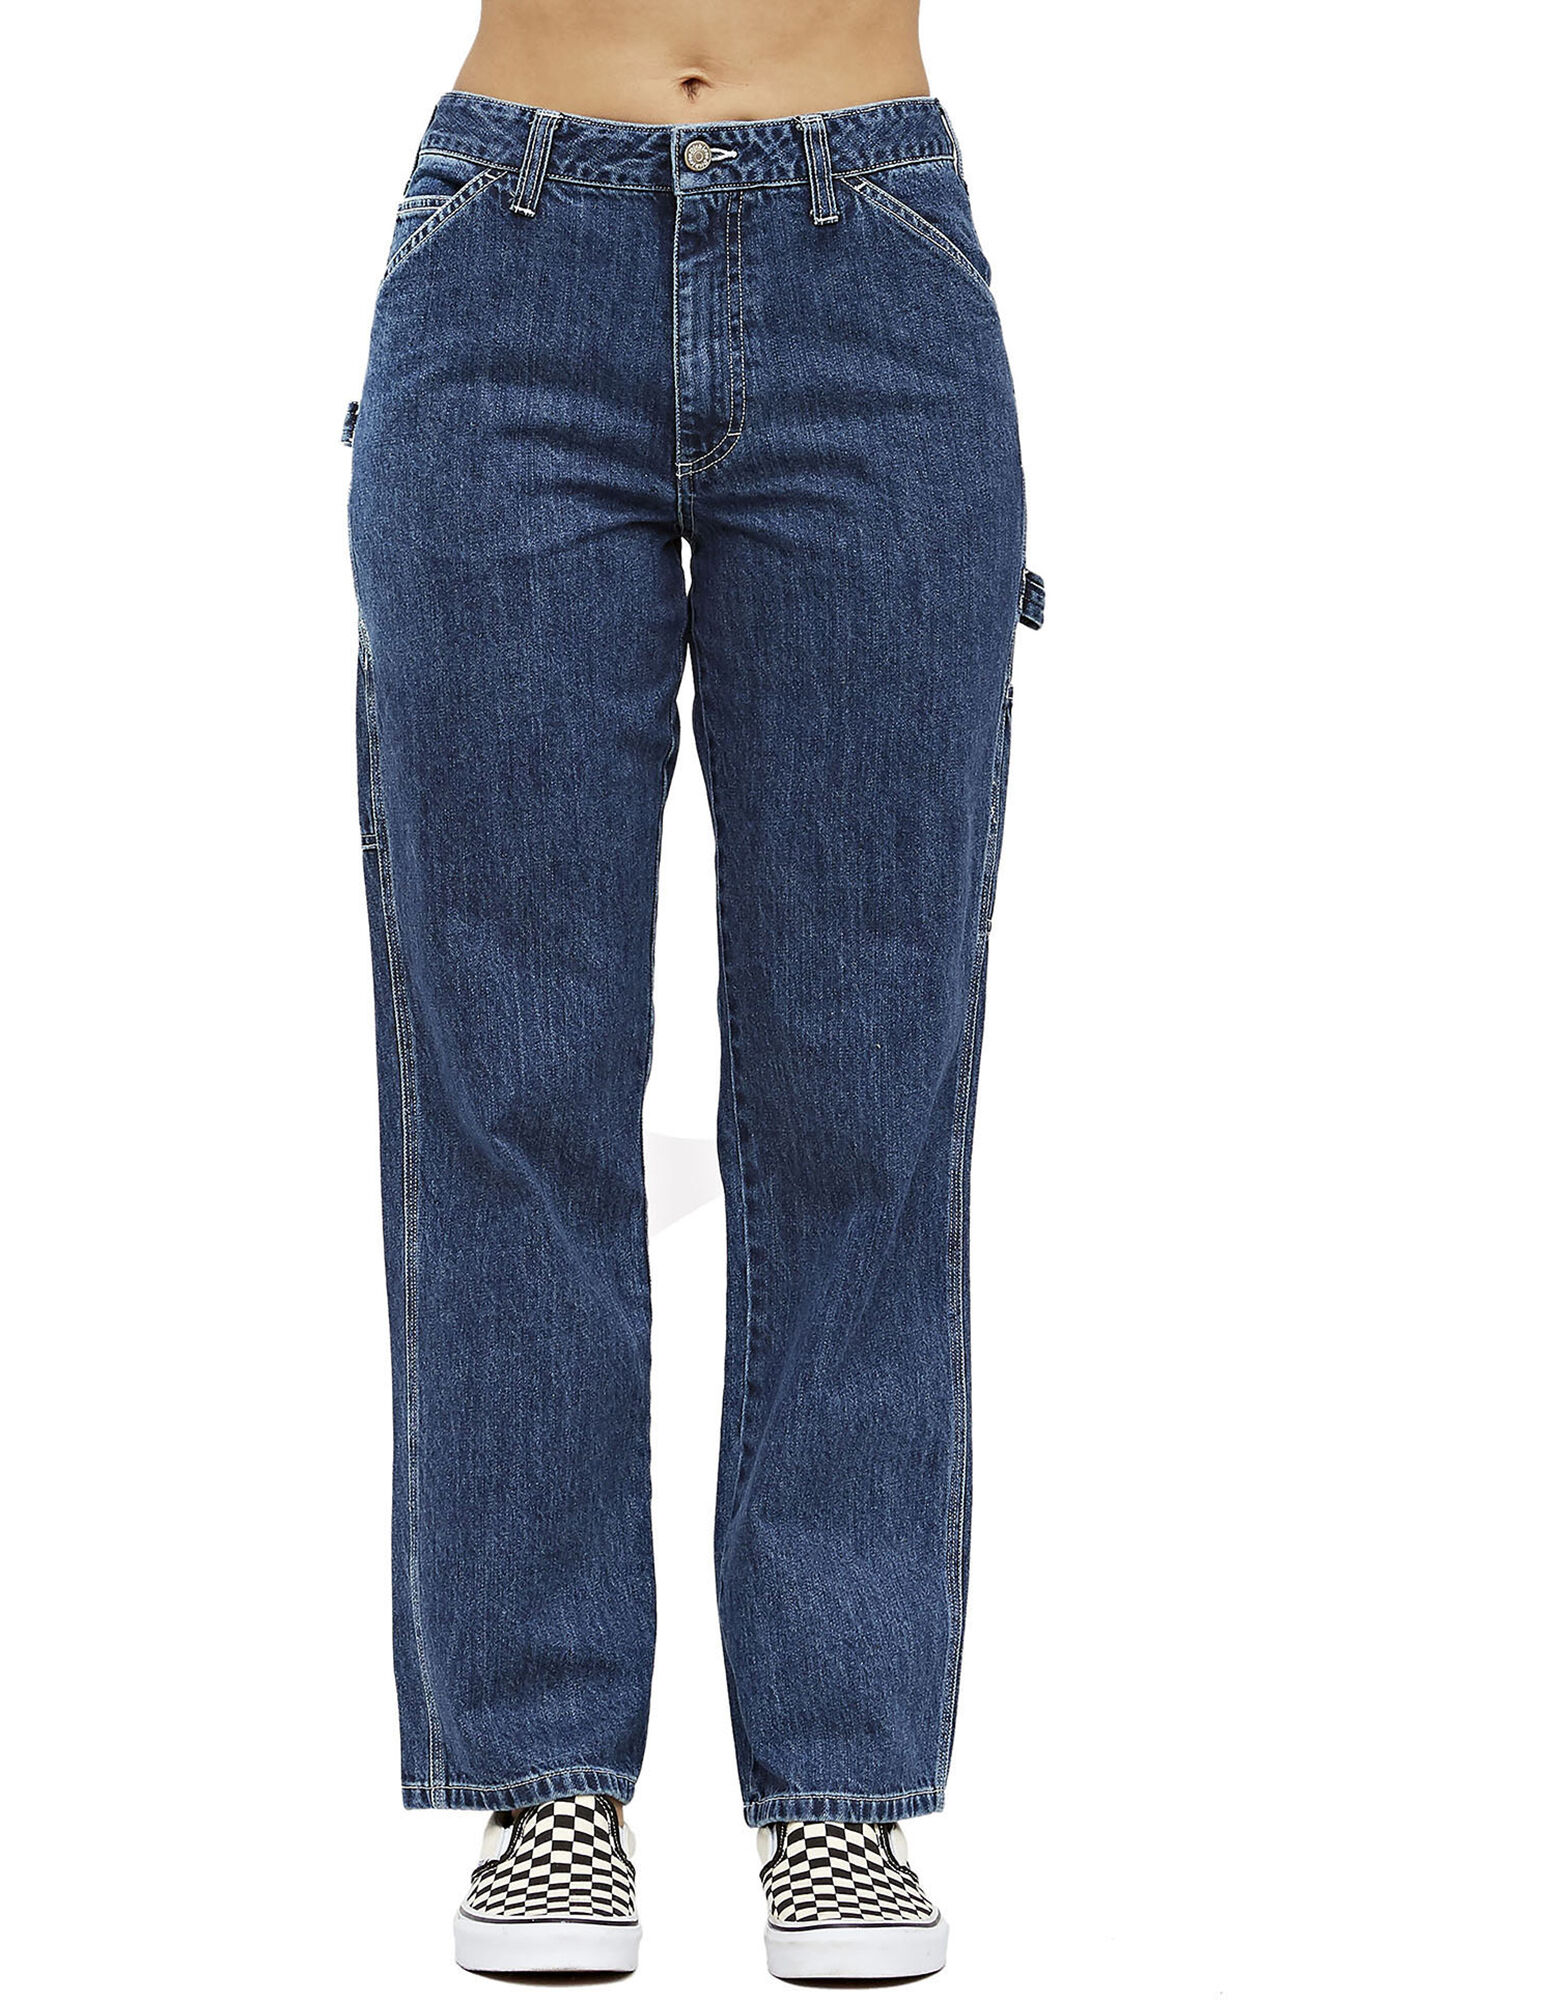 size 0 junior jeans